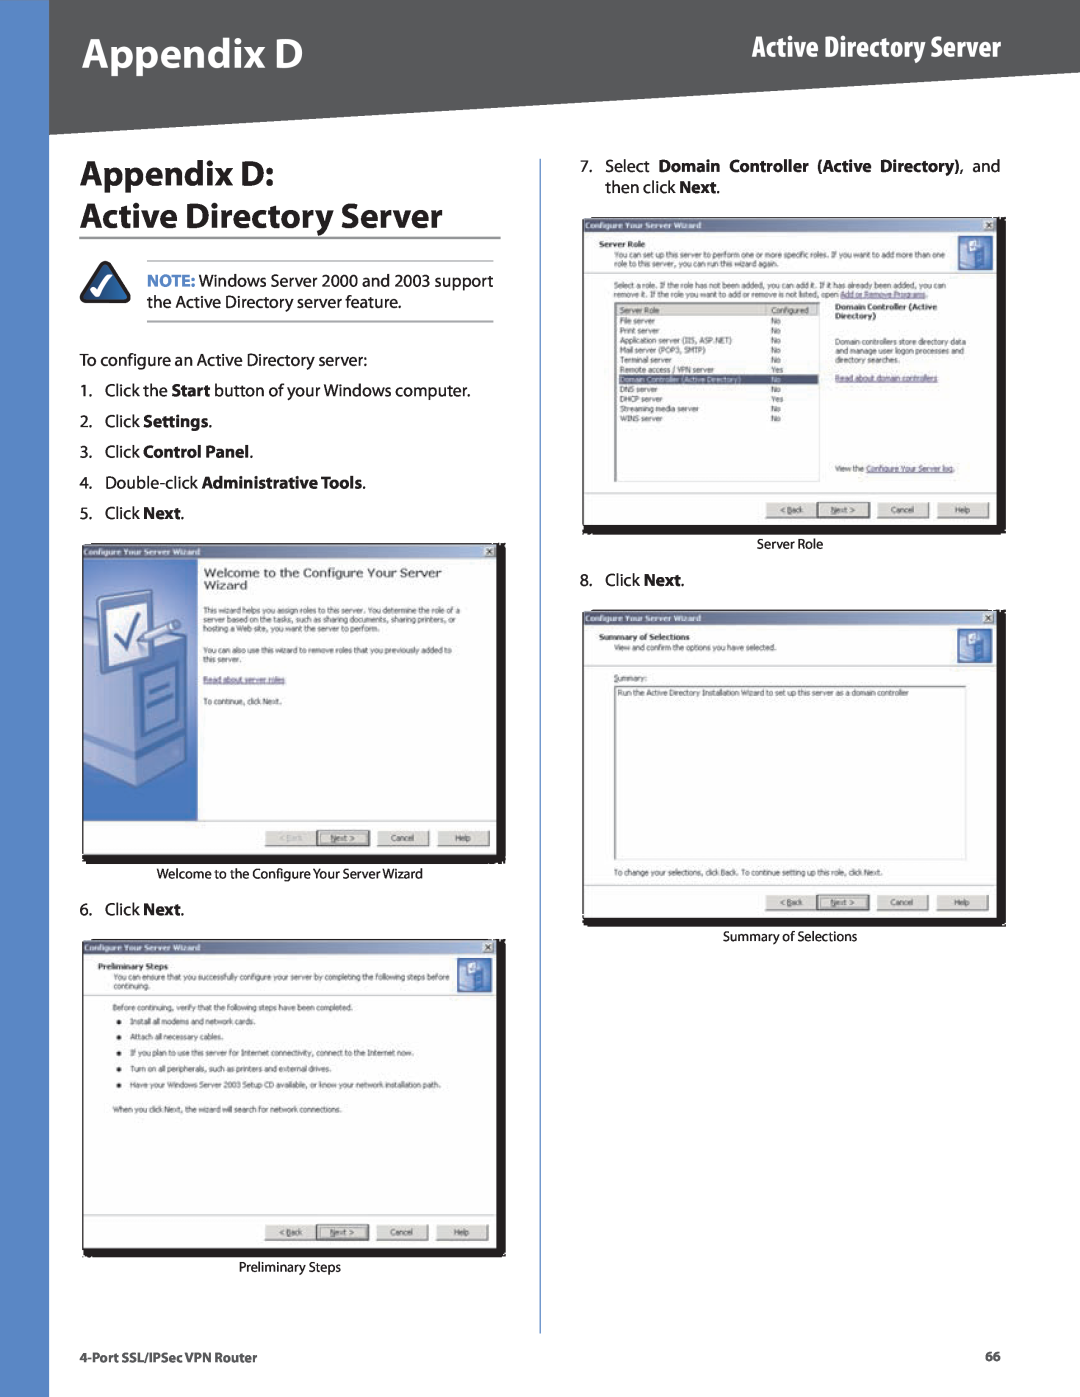 Cisco Systems RVL200 manual Appendix D Active Directory Server, Click Settings 3. Click Control Panel 